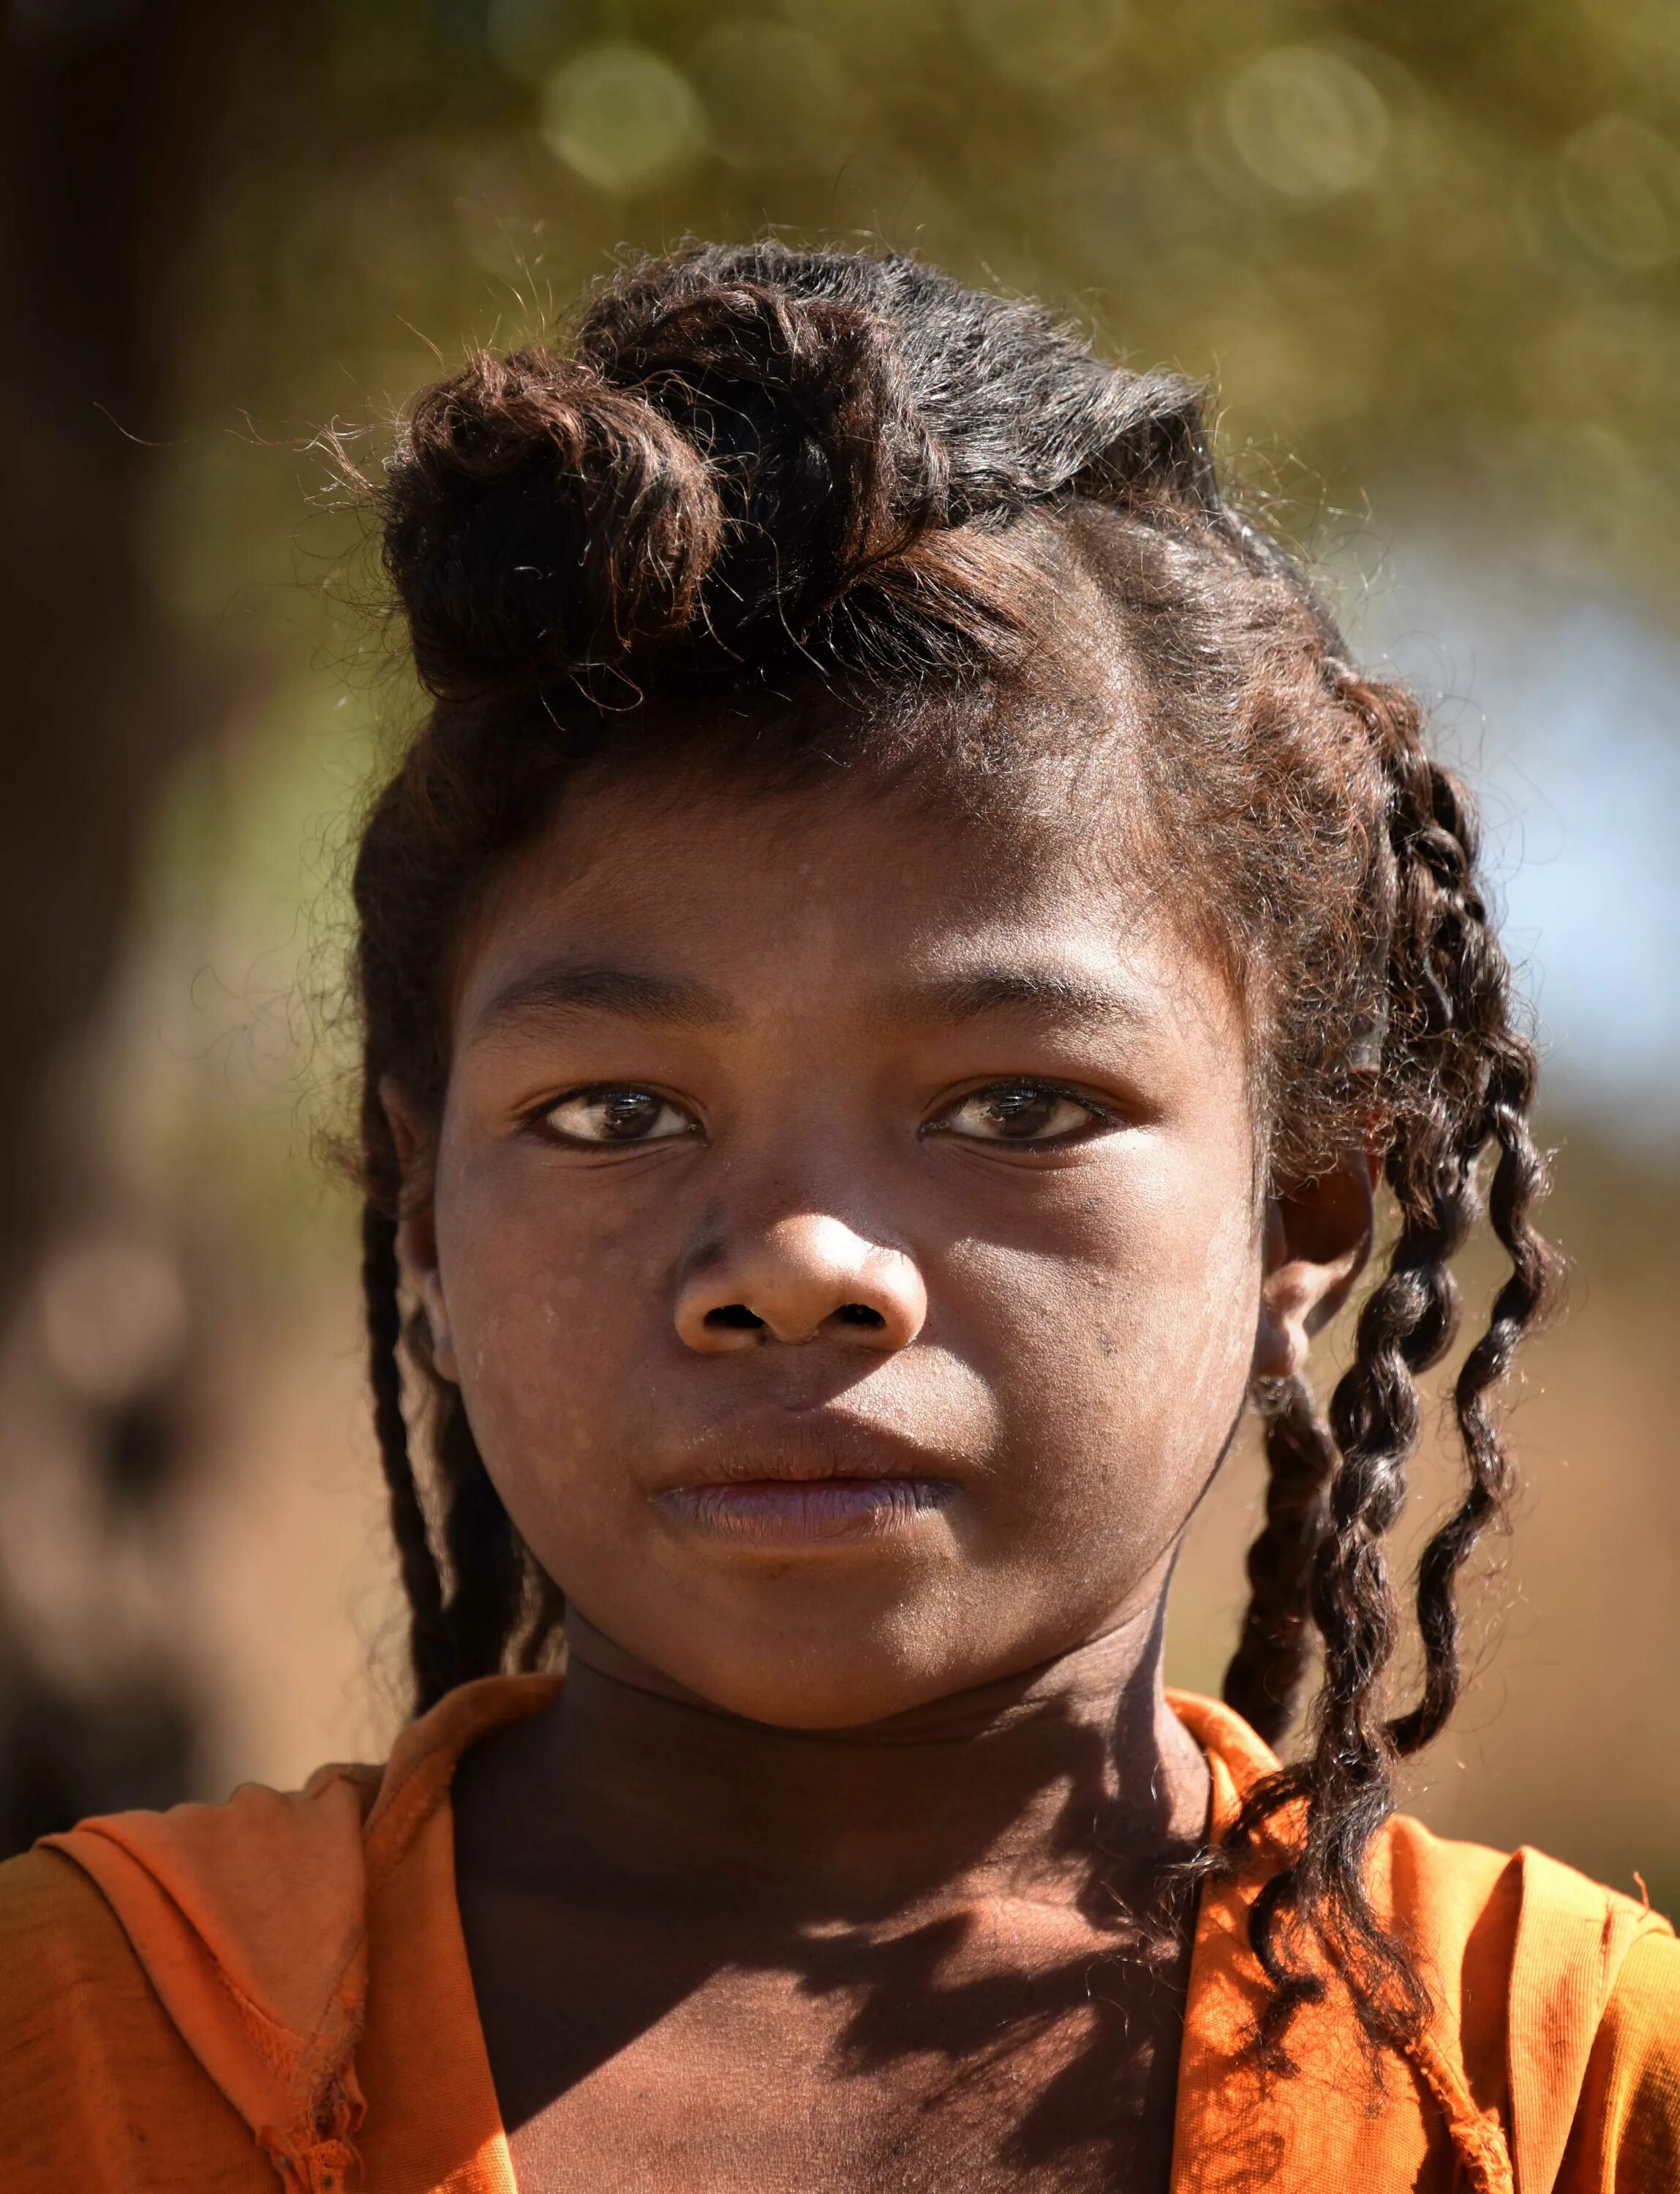 Малагасийцы народ Африки. Малагасийцы монголоиды. Малагасийцы раса. Жители Мадагаскара.